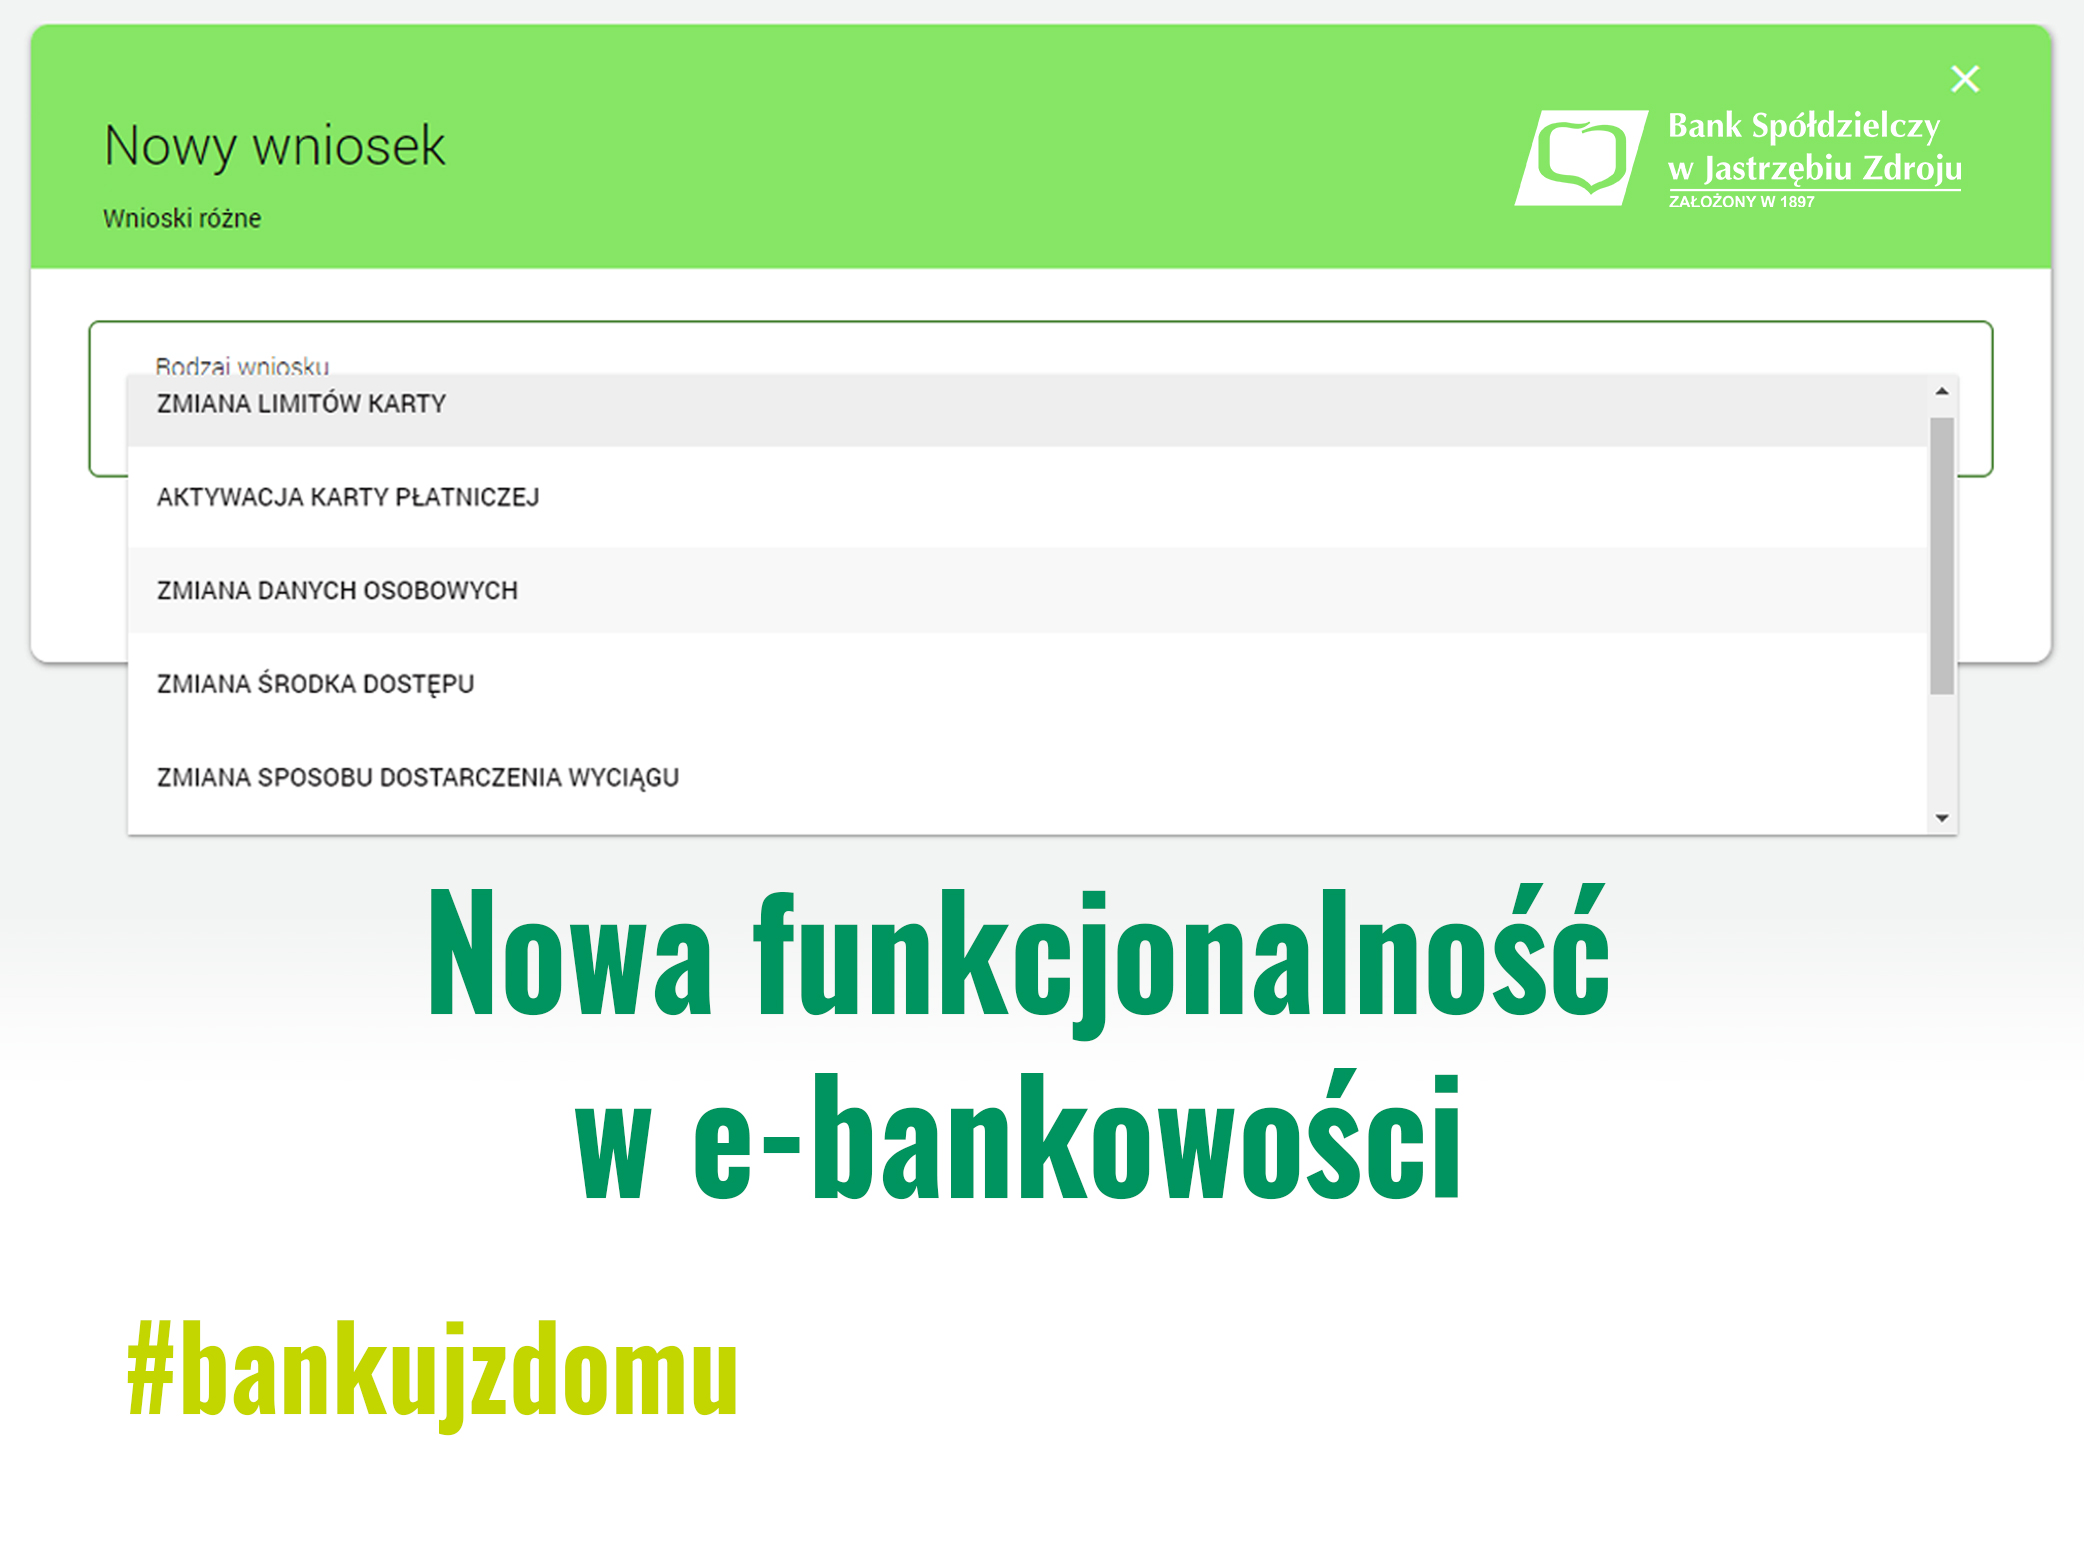 Nowa funkcjonalność e-bankowości. #bankujzdomu